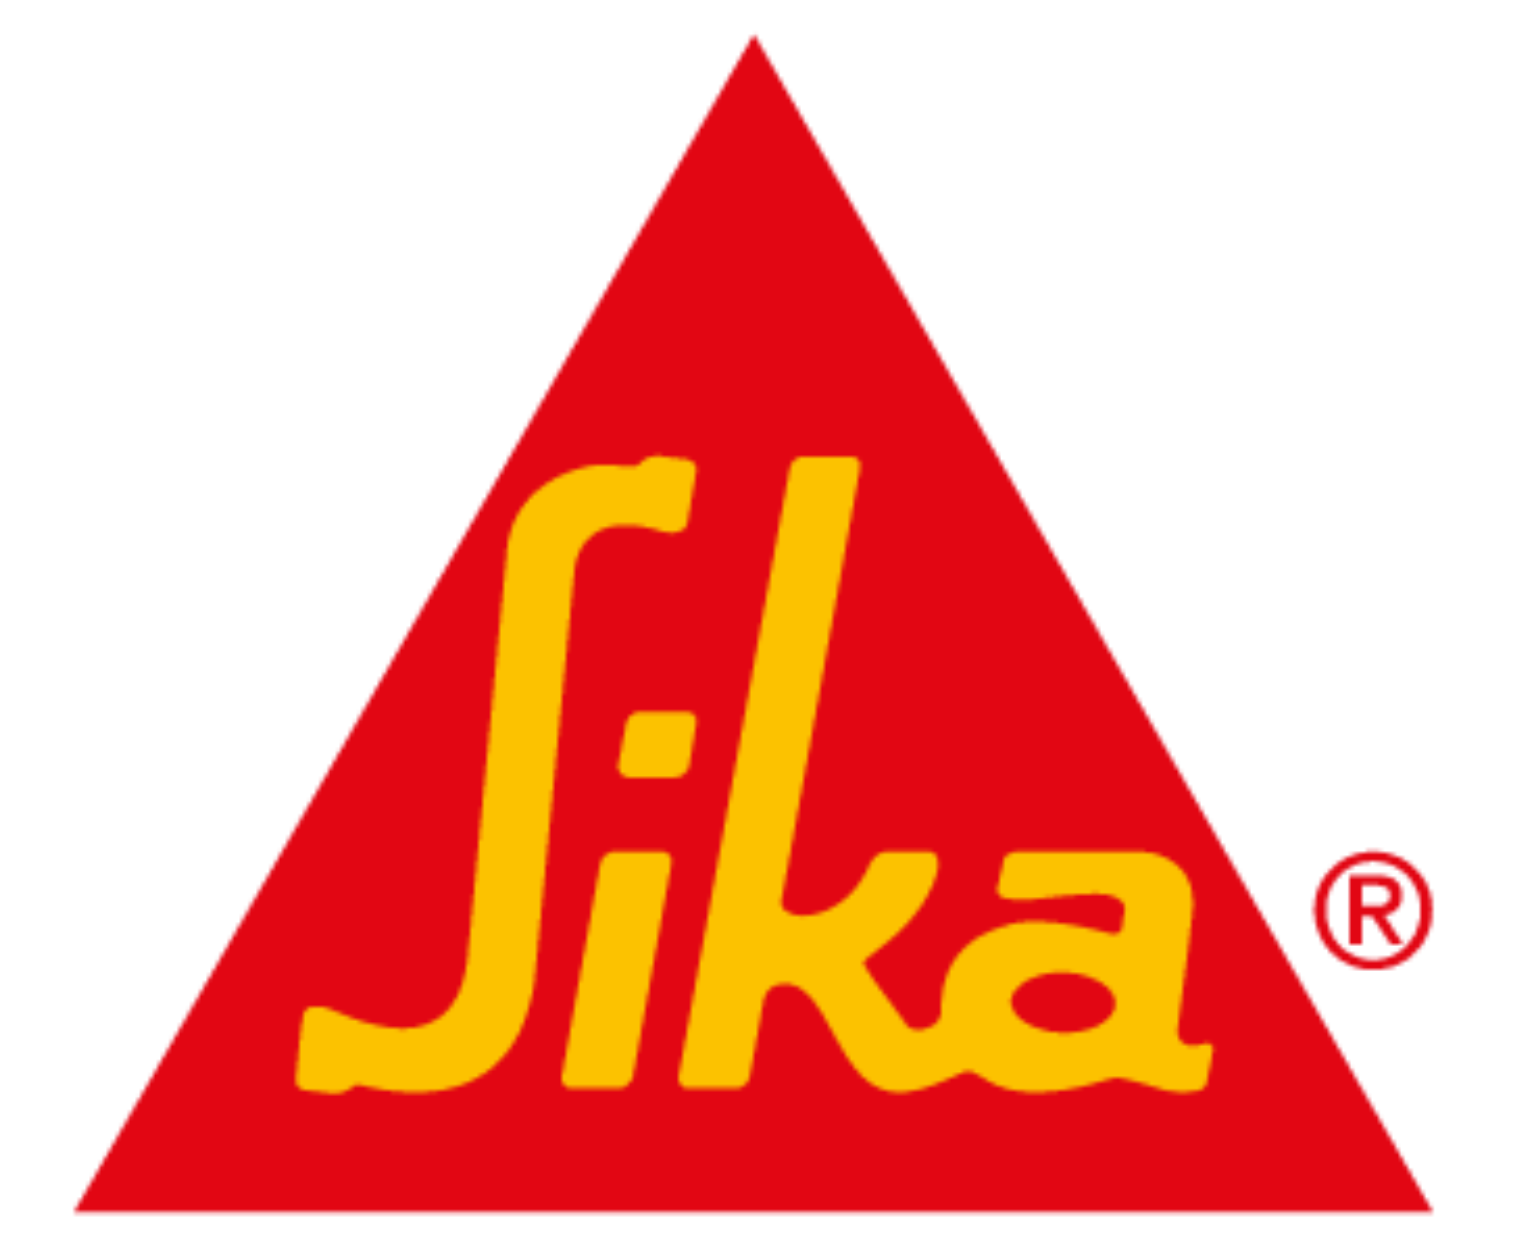 sika-vector-logo